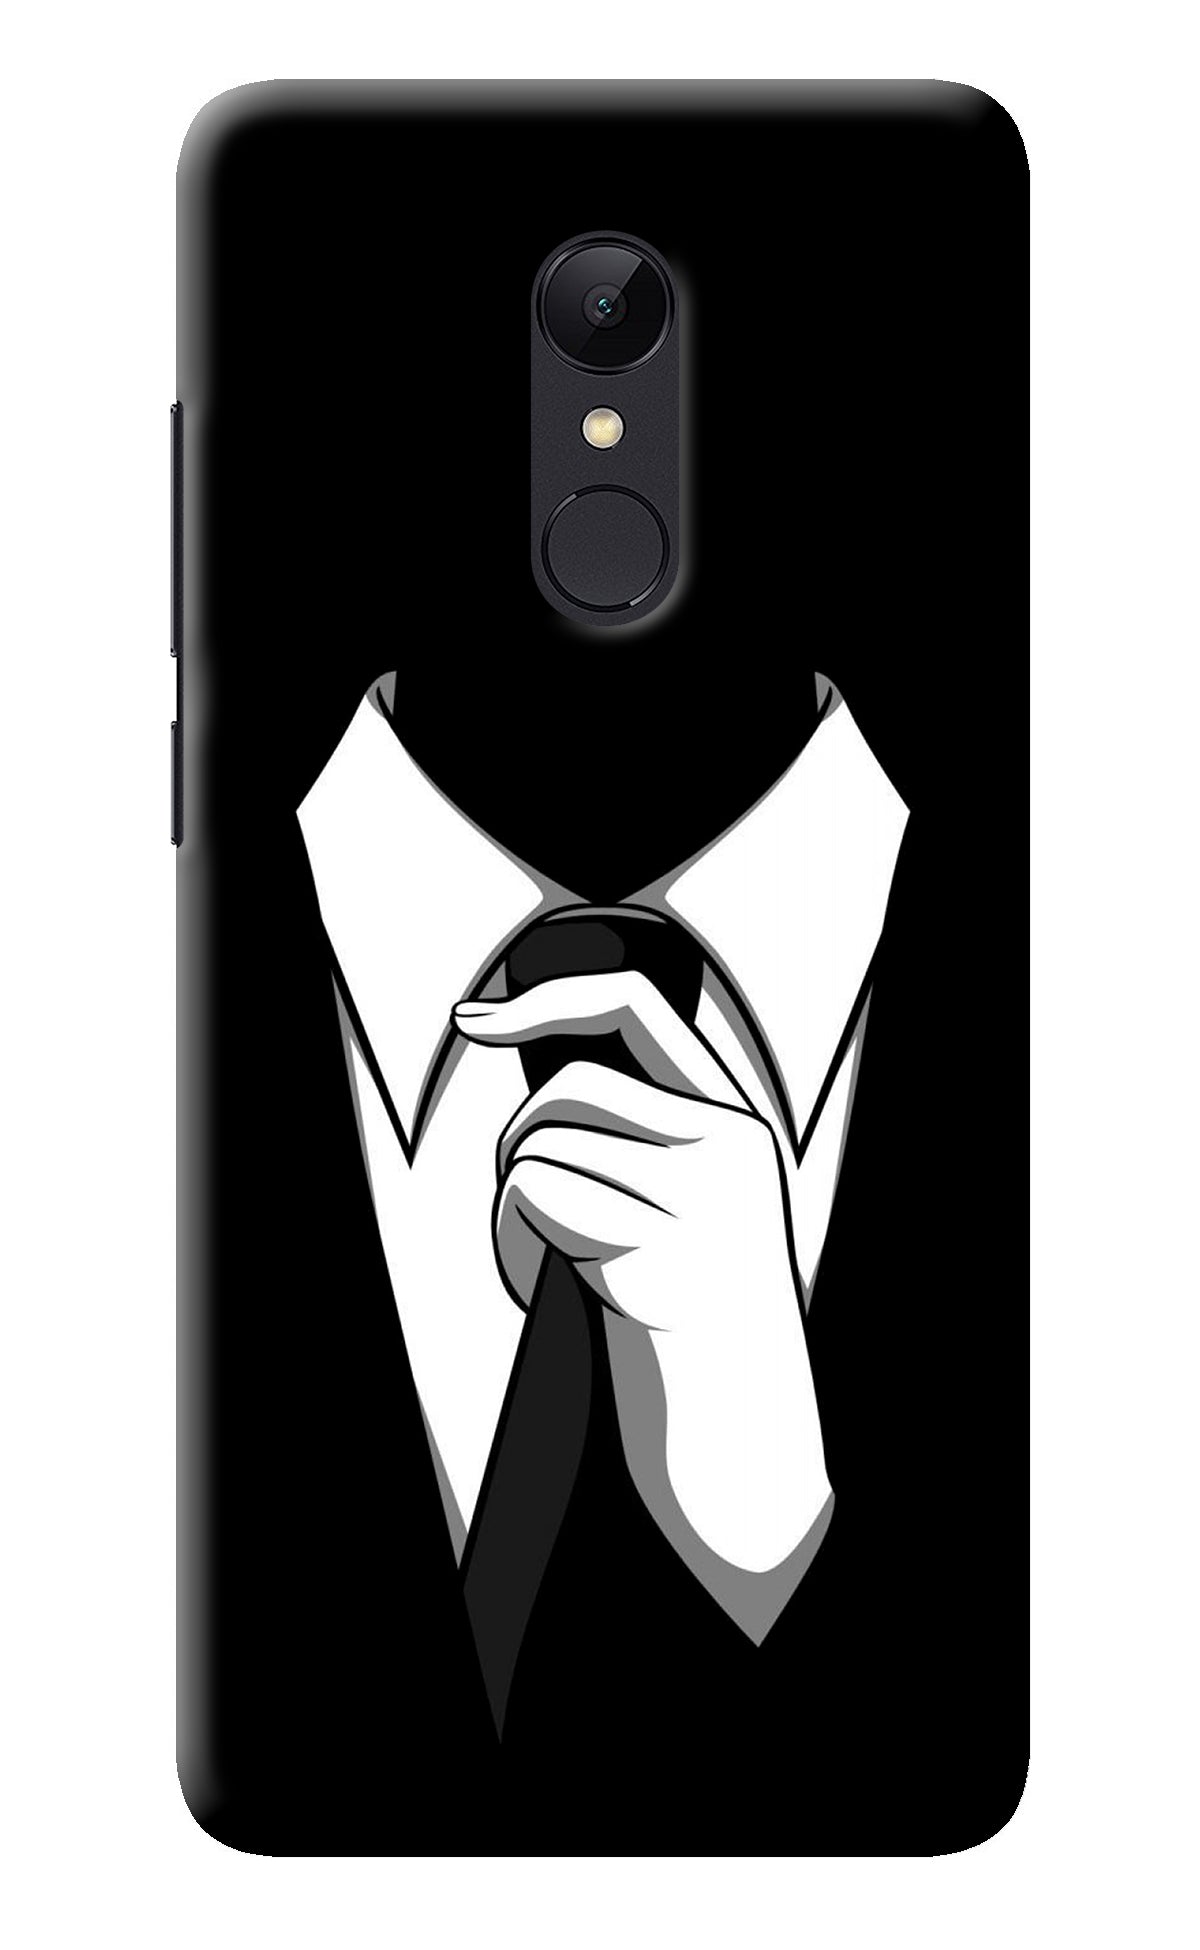 Black Tie Redmi Note 4 Back Cover